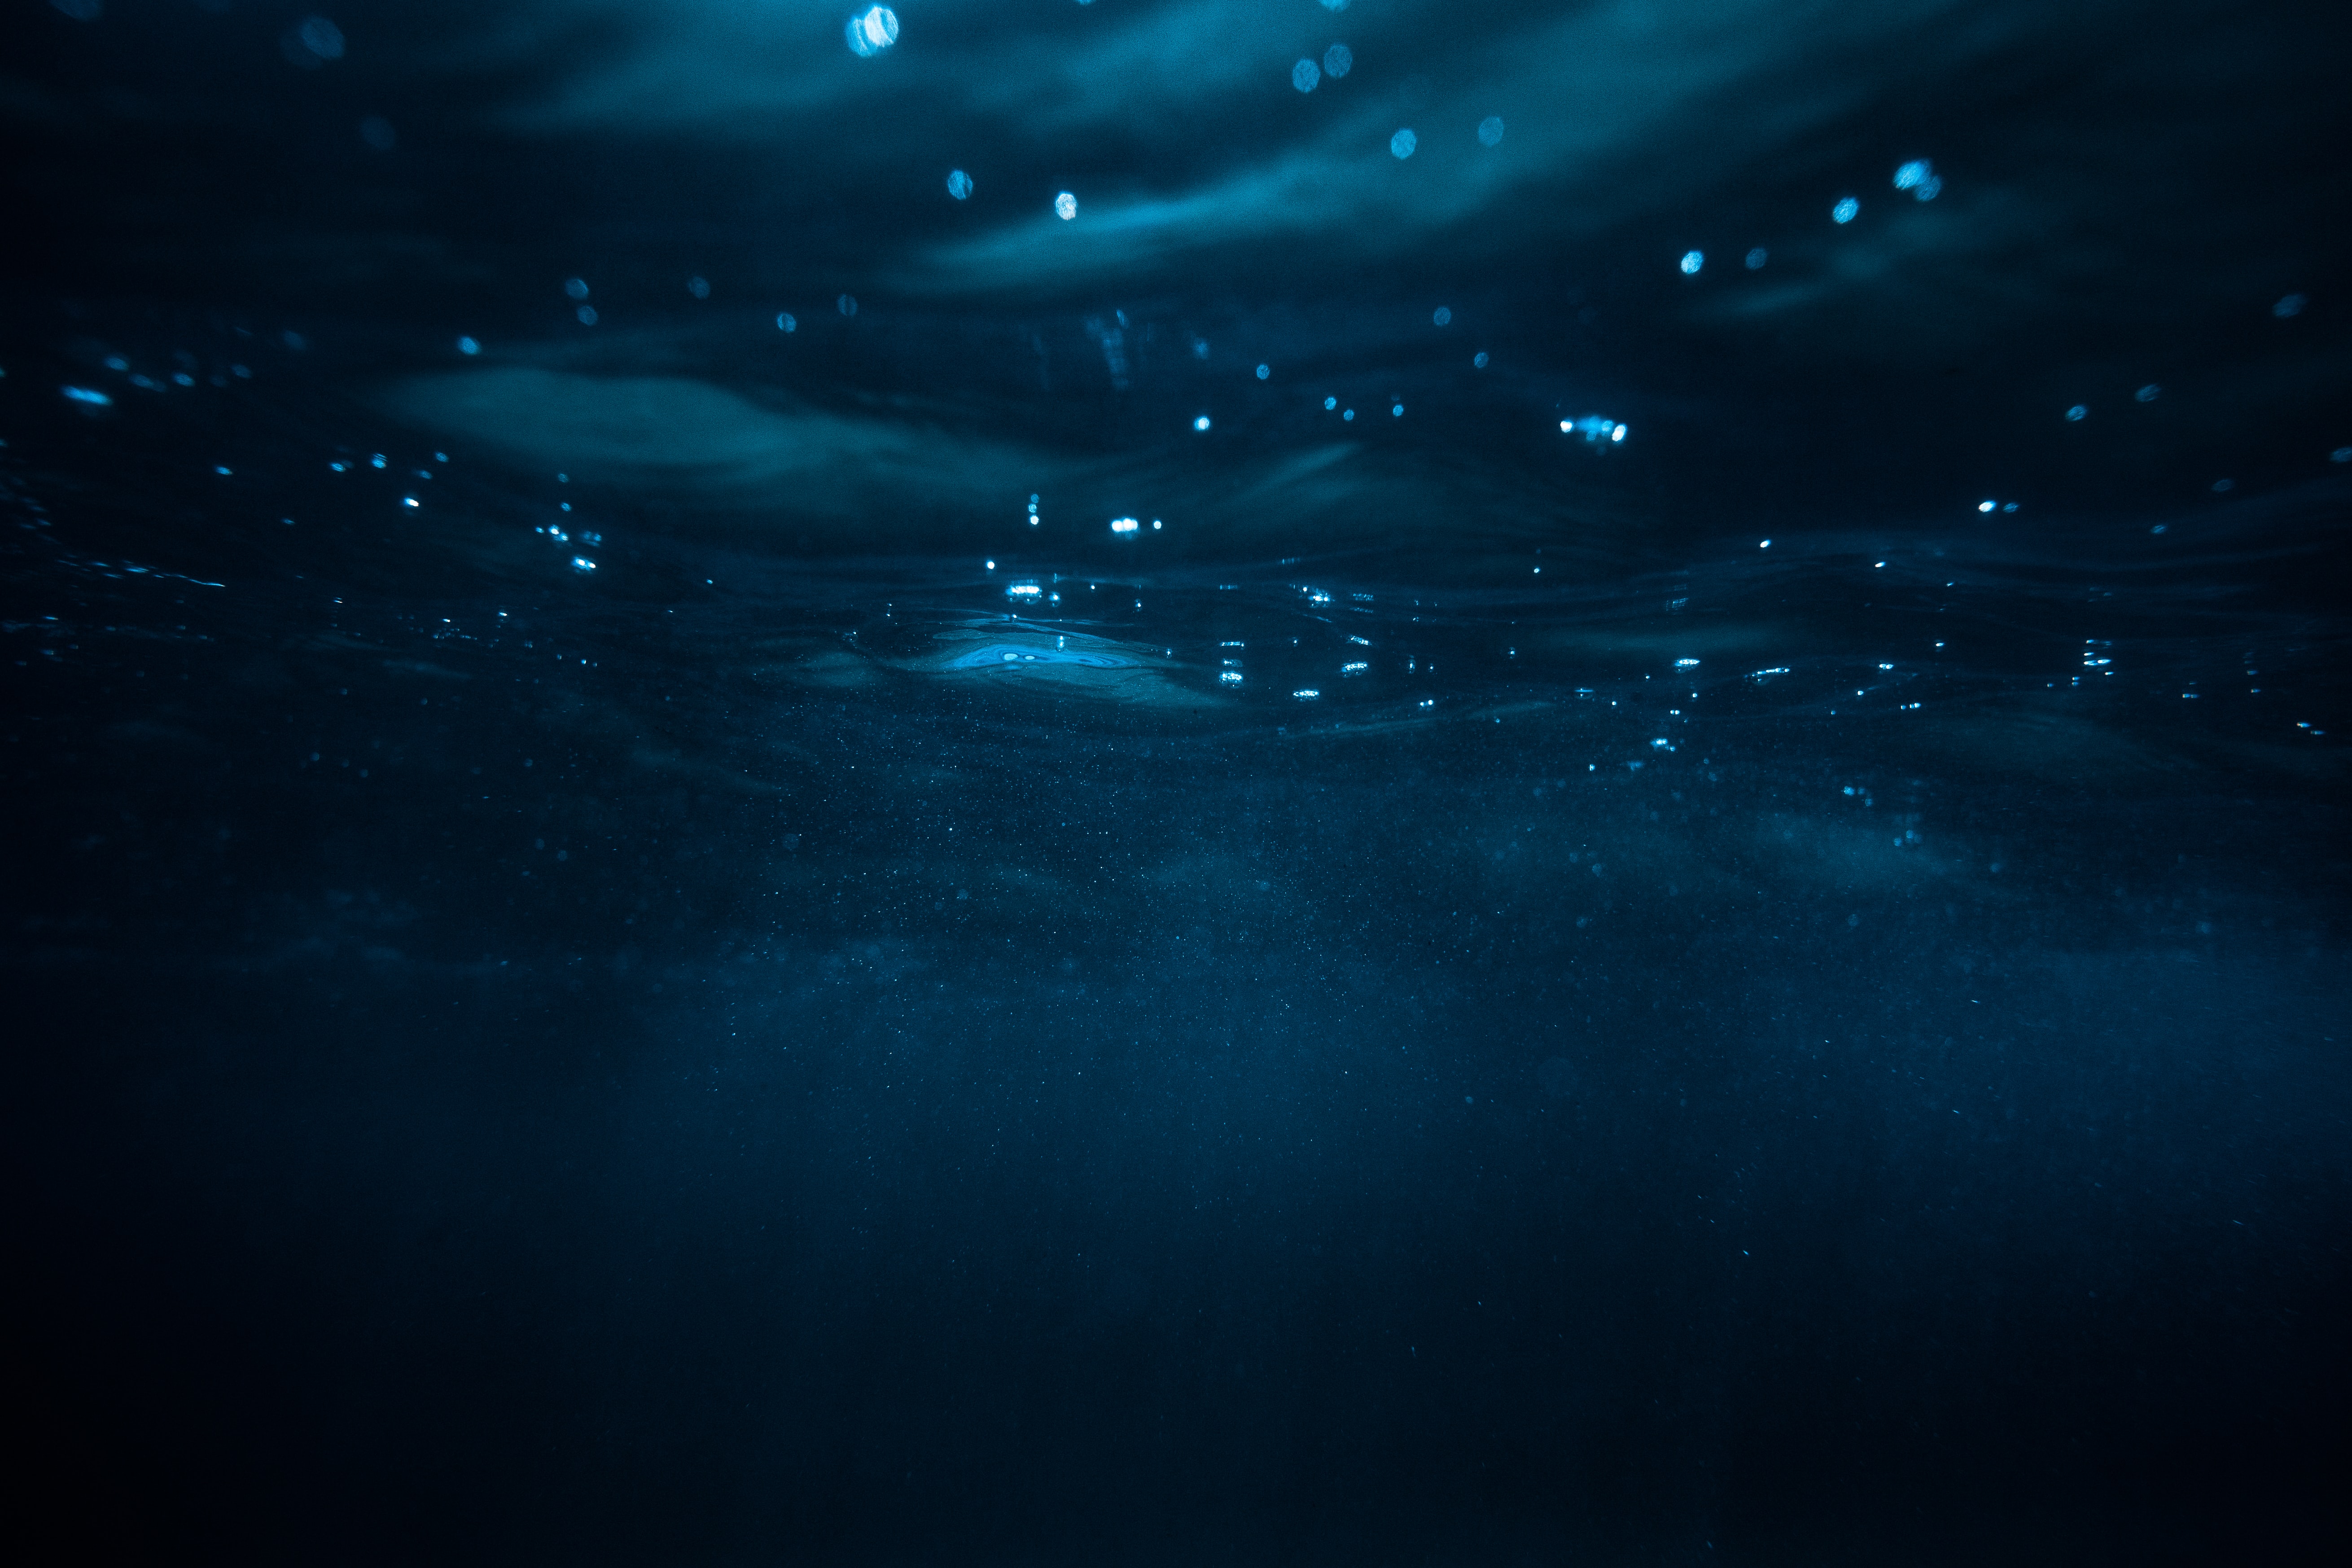 Underwater iPhone wallpapers